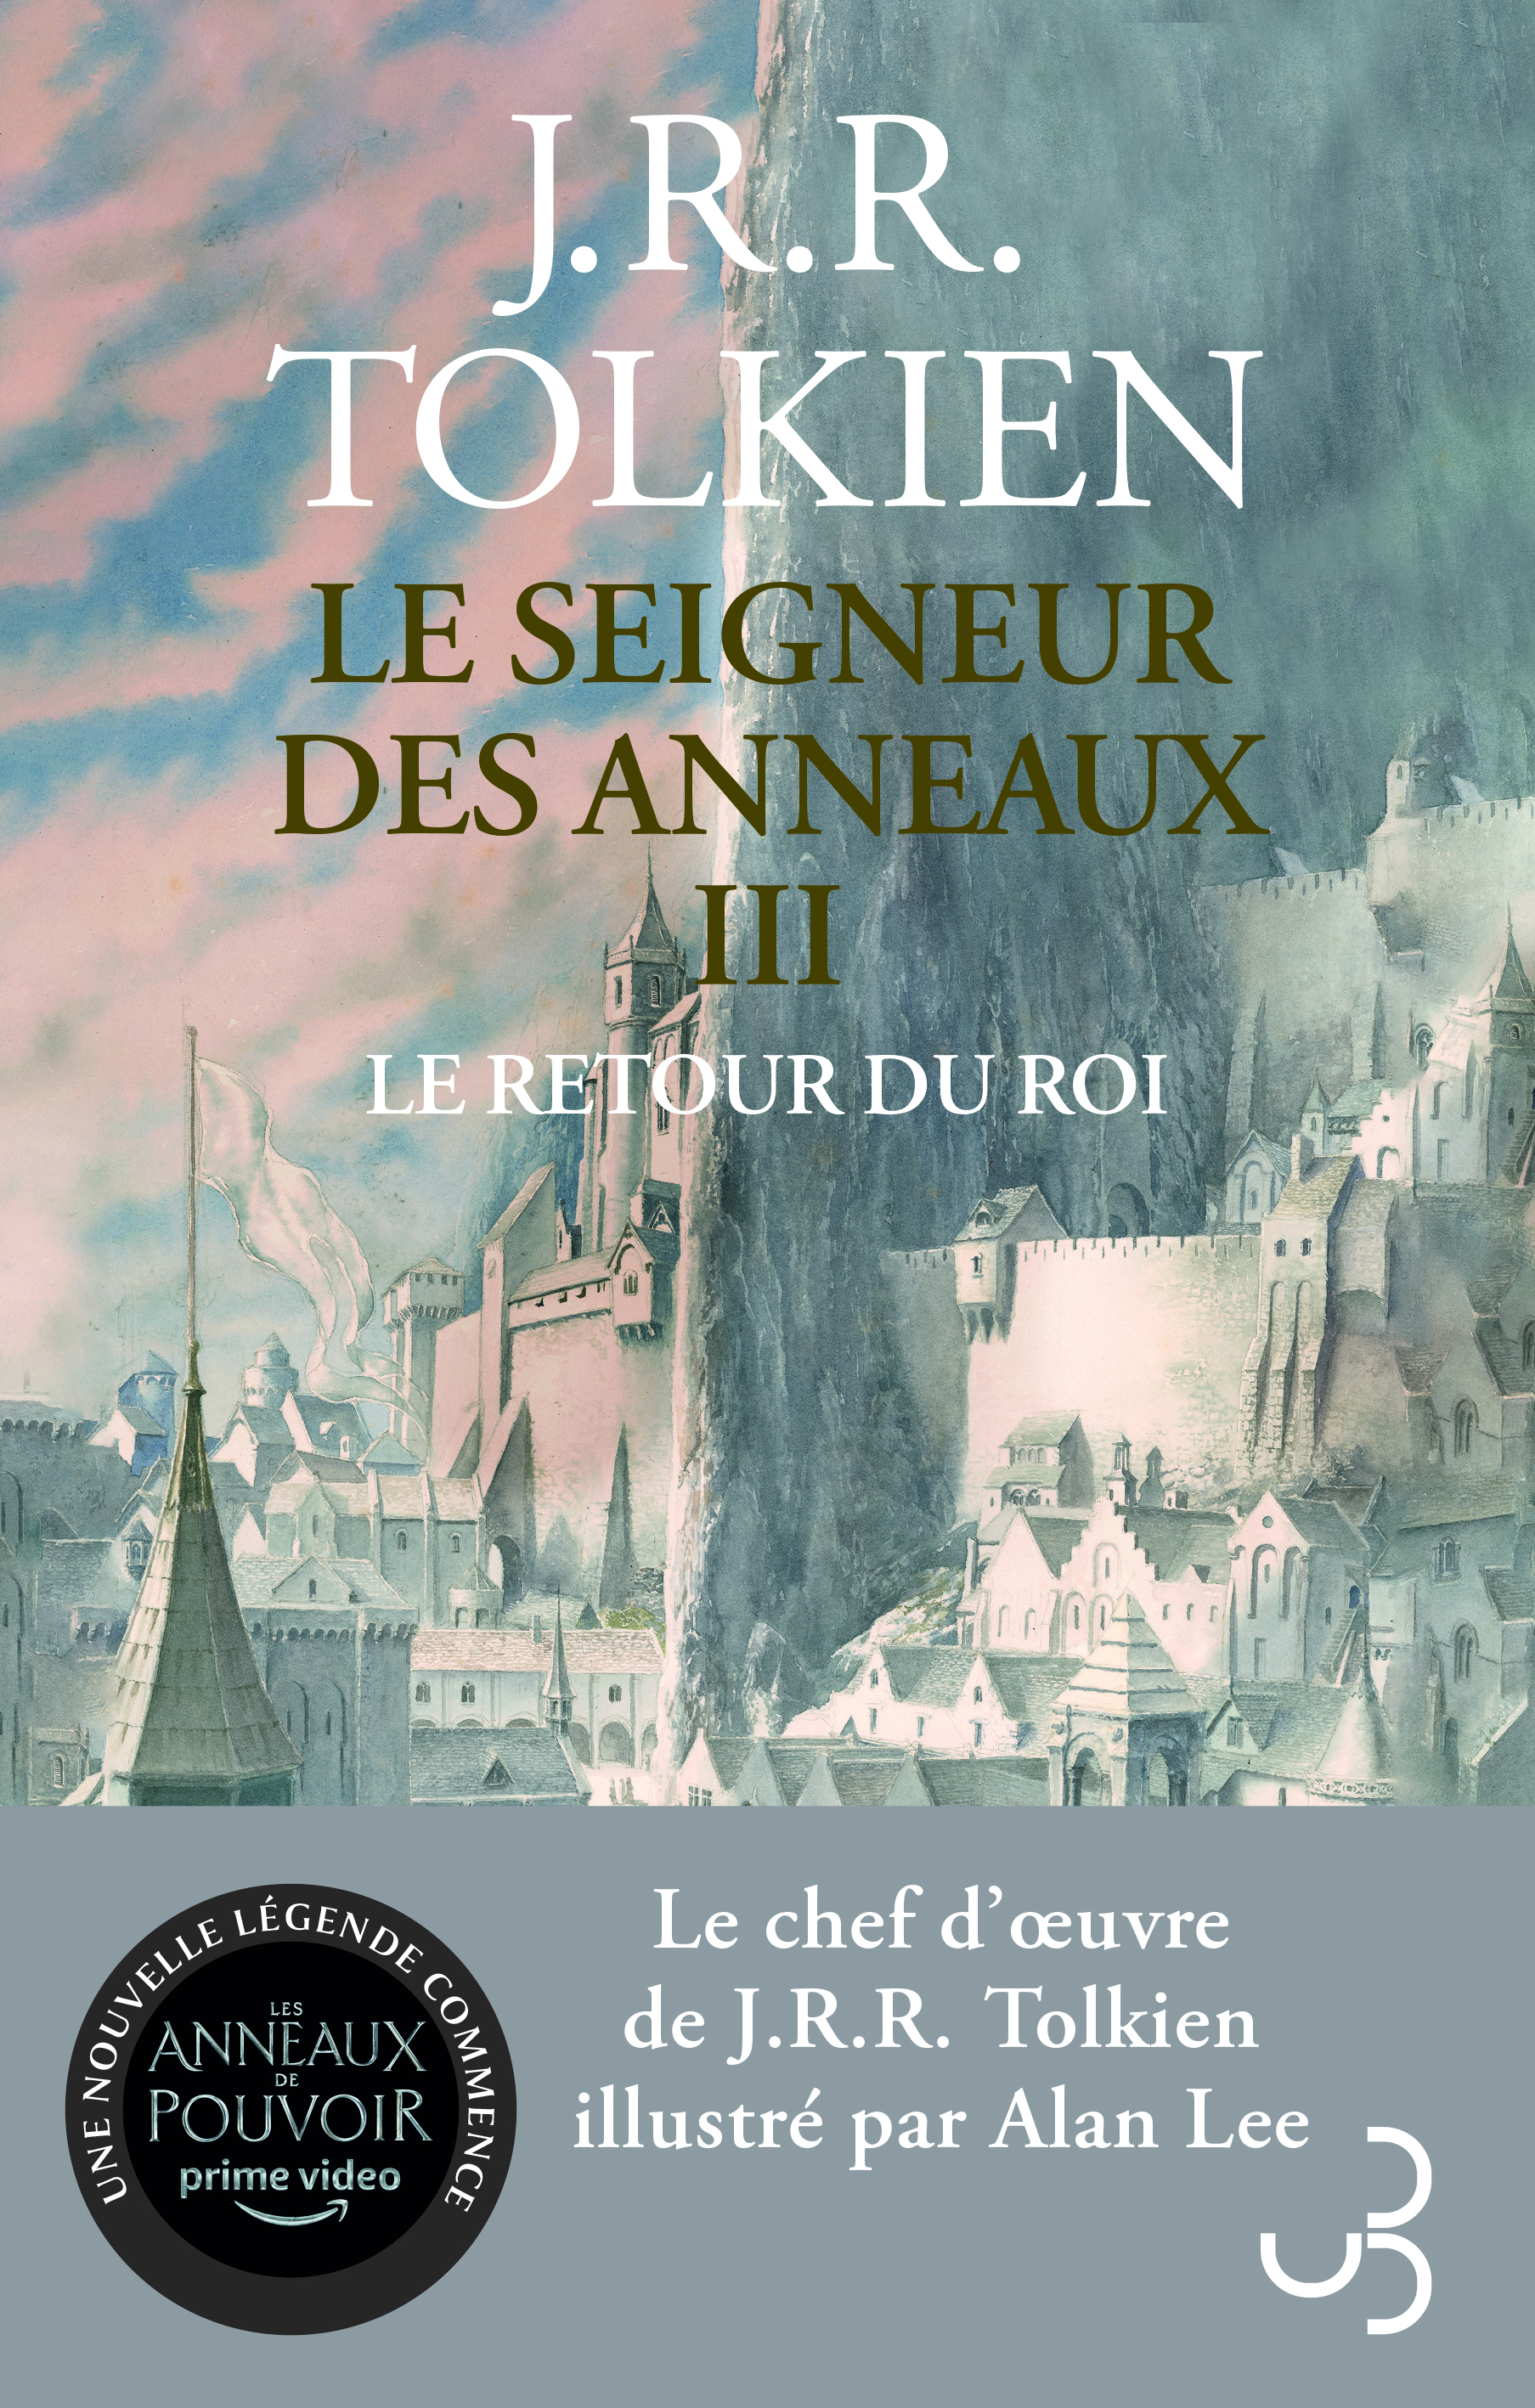 https://bourgoisediteur.fr/wp-content/uploads/2022/06/Tolkien-Le-Seigneur-des-Anneaux-3-NED.jpg